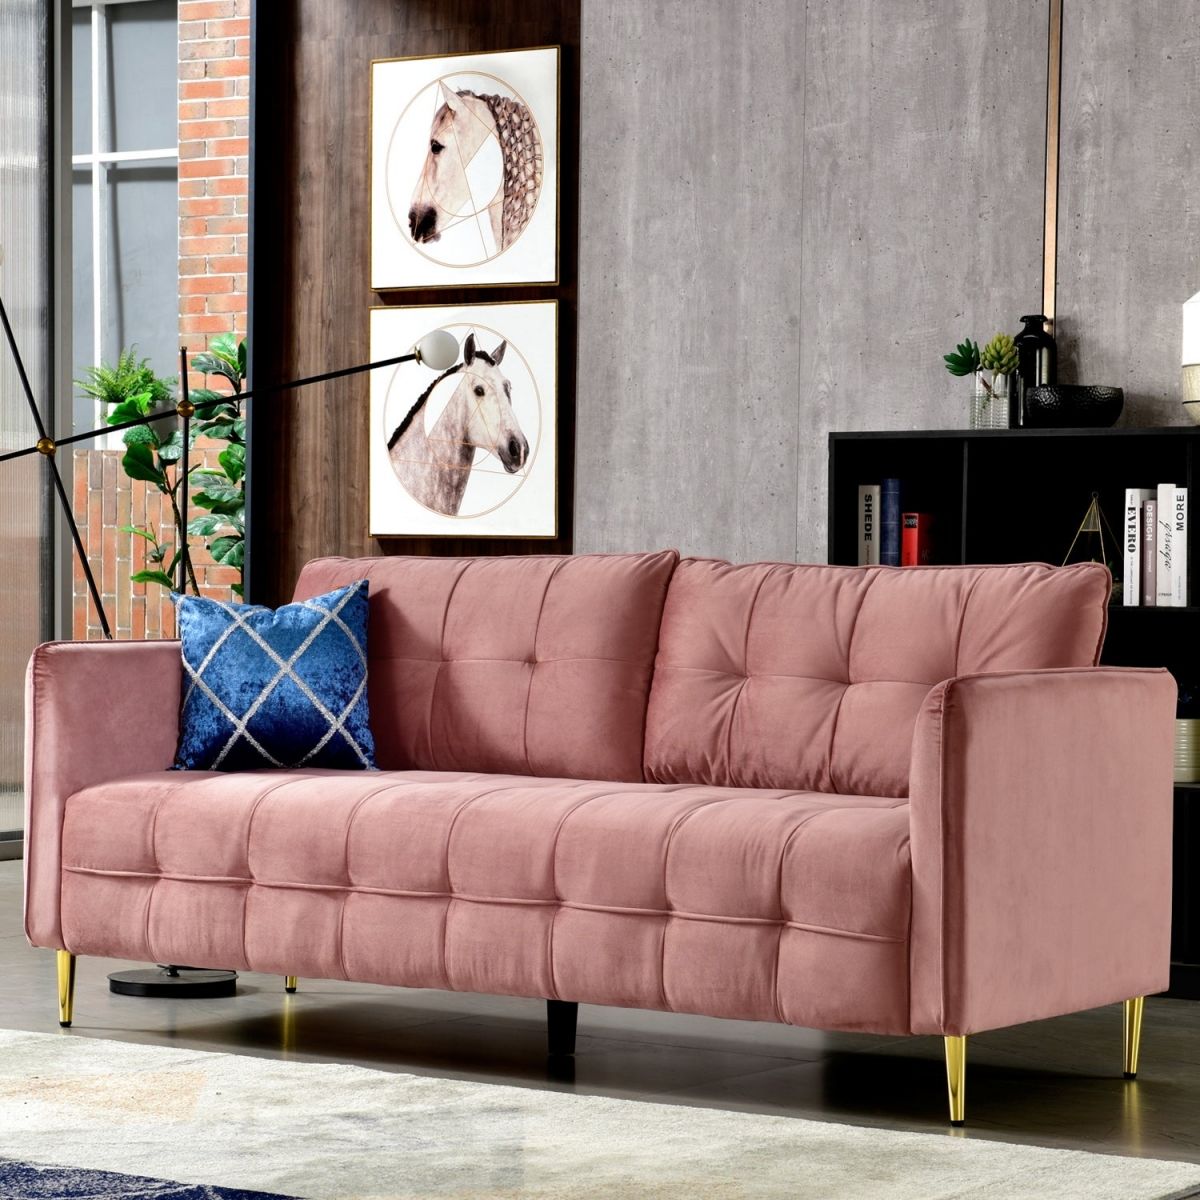 Hiểu biết cơ bản về một chiếc ghế sofa